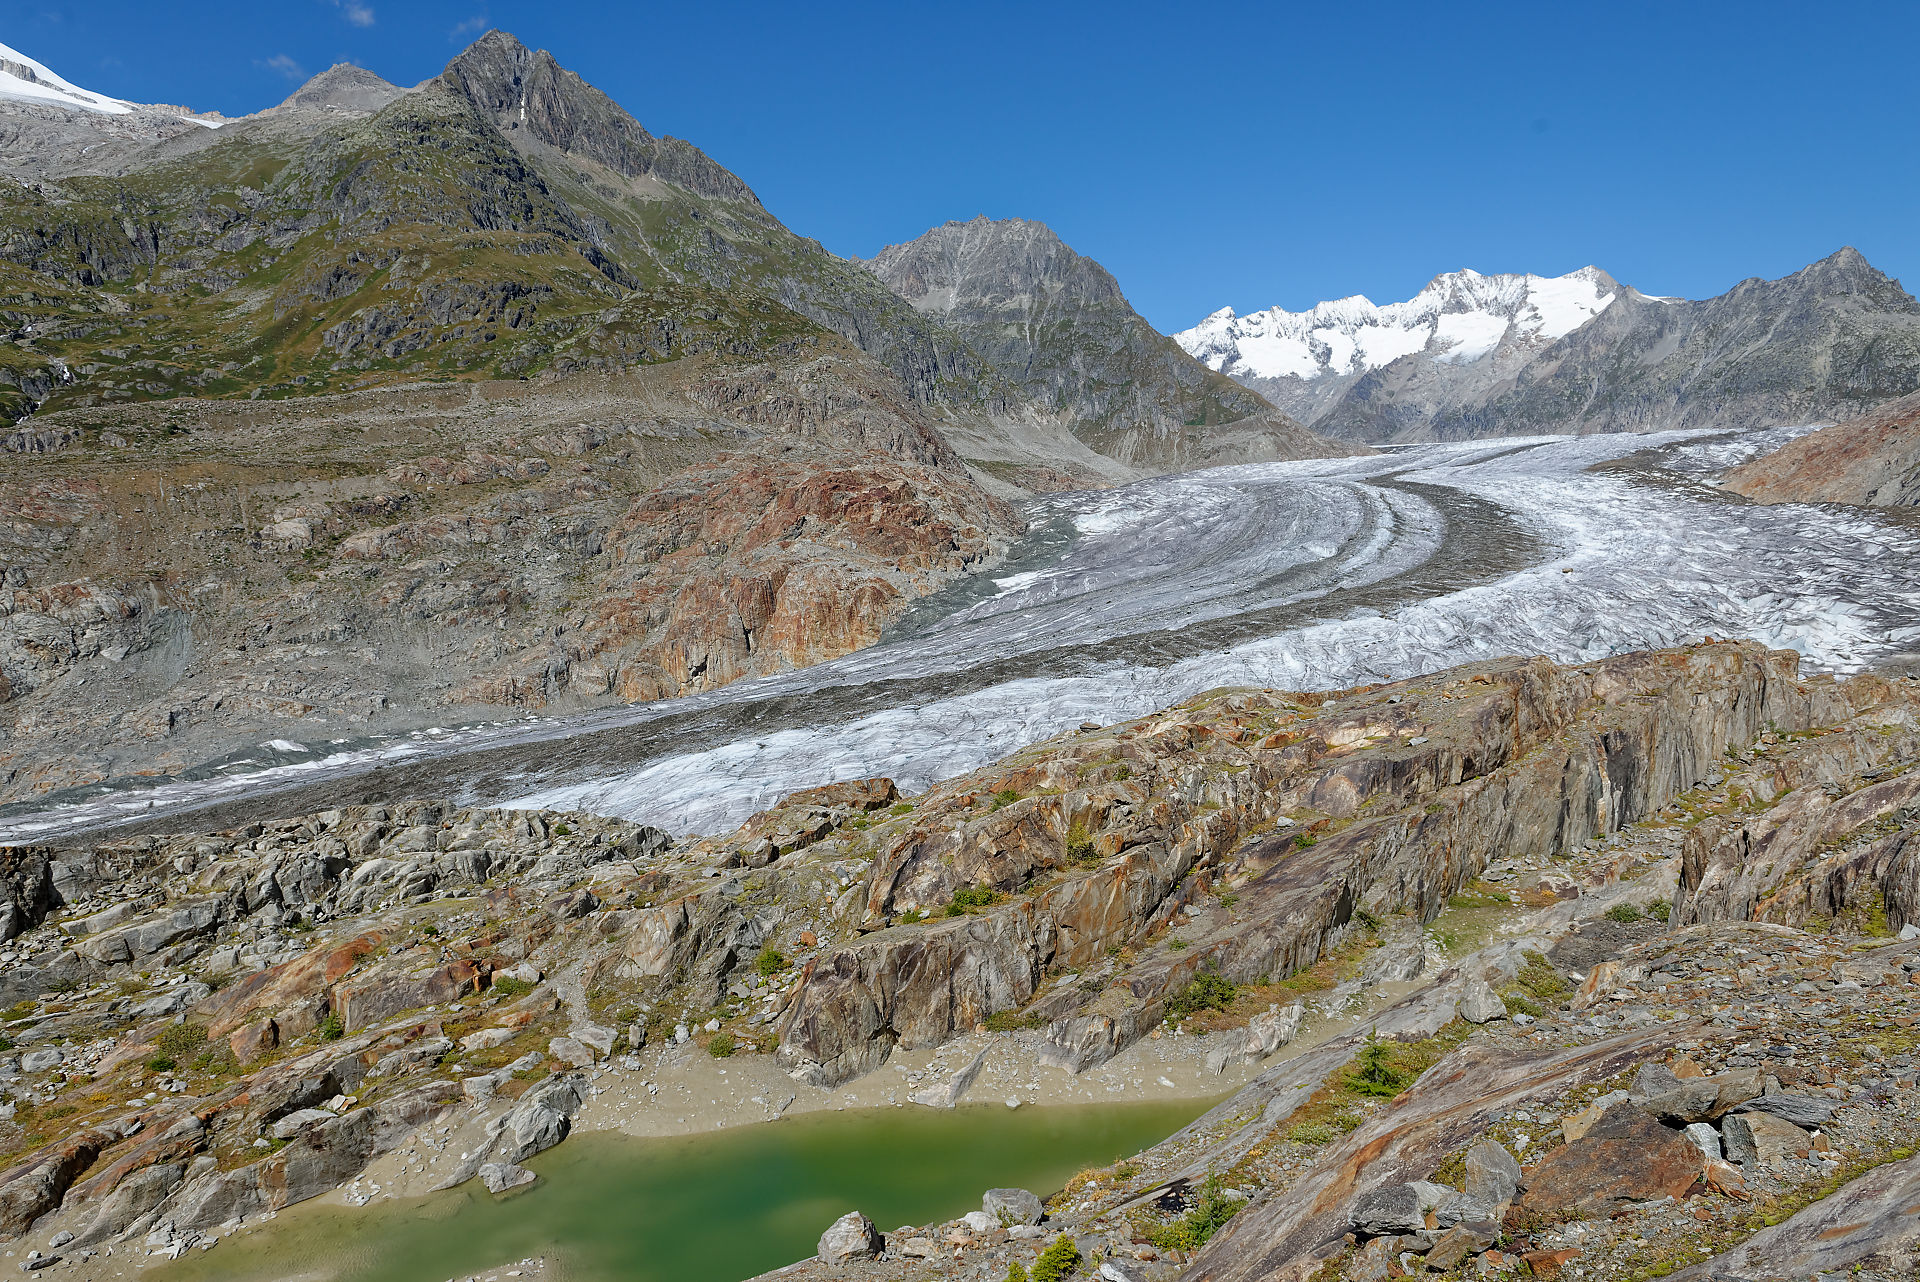 Lac glaciaire, roches polies et striées et glacier